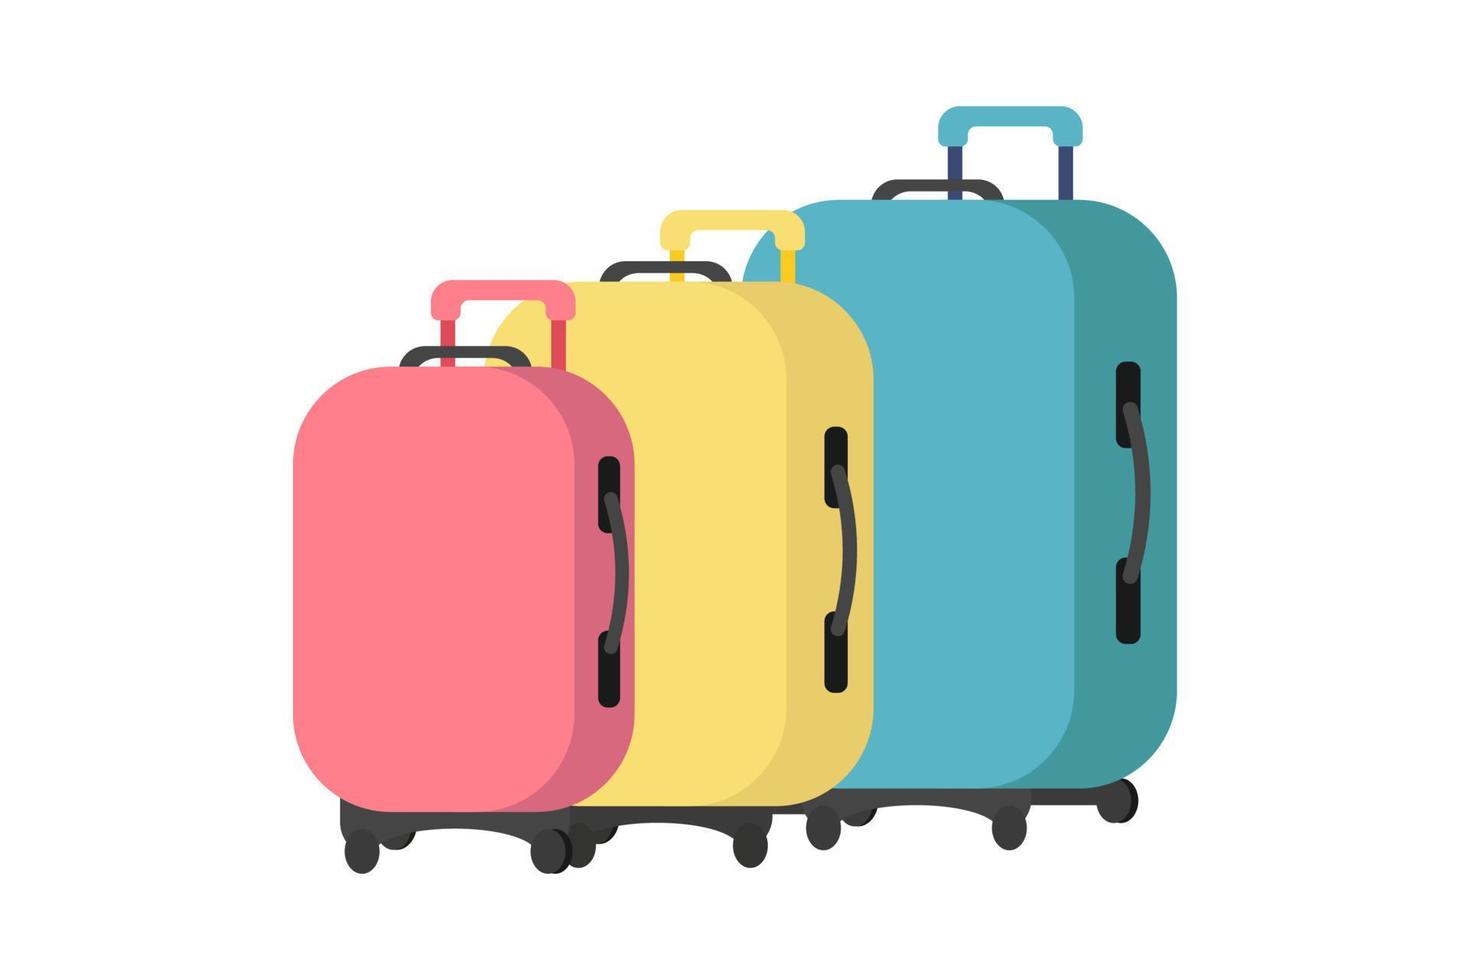 familie koffers. set van drie koffers. vakantie concept. element voor uw reisontwerp. vlakke stijl, vectorillustratie. vector